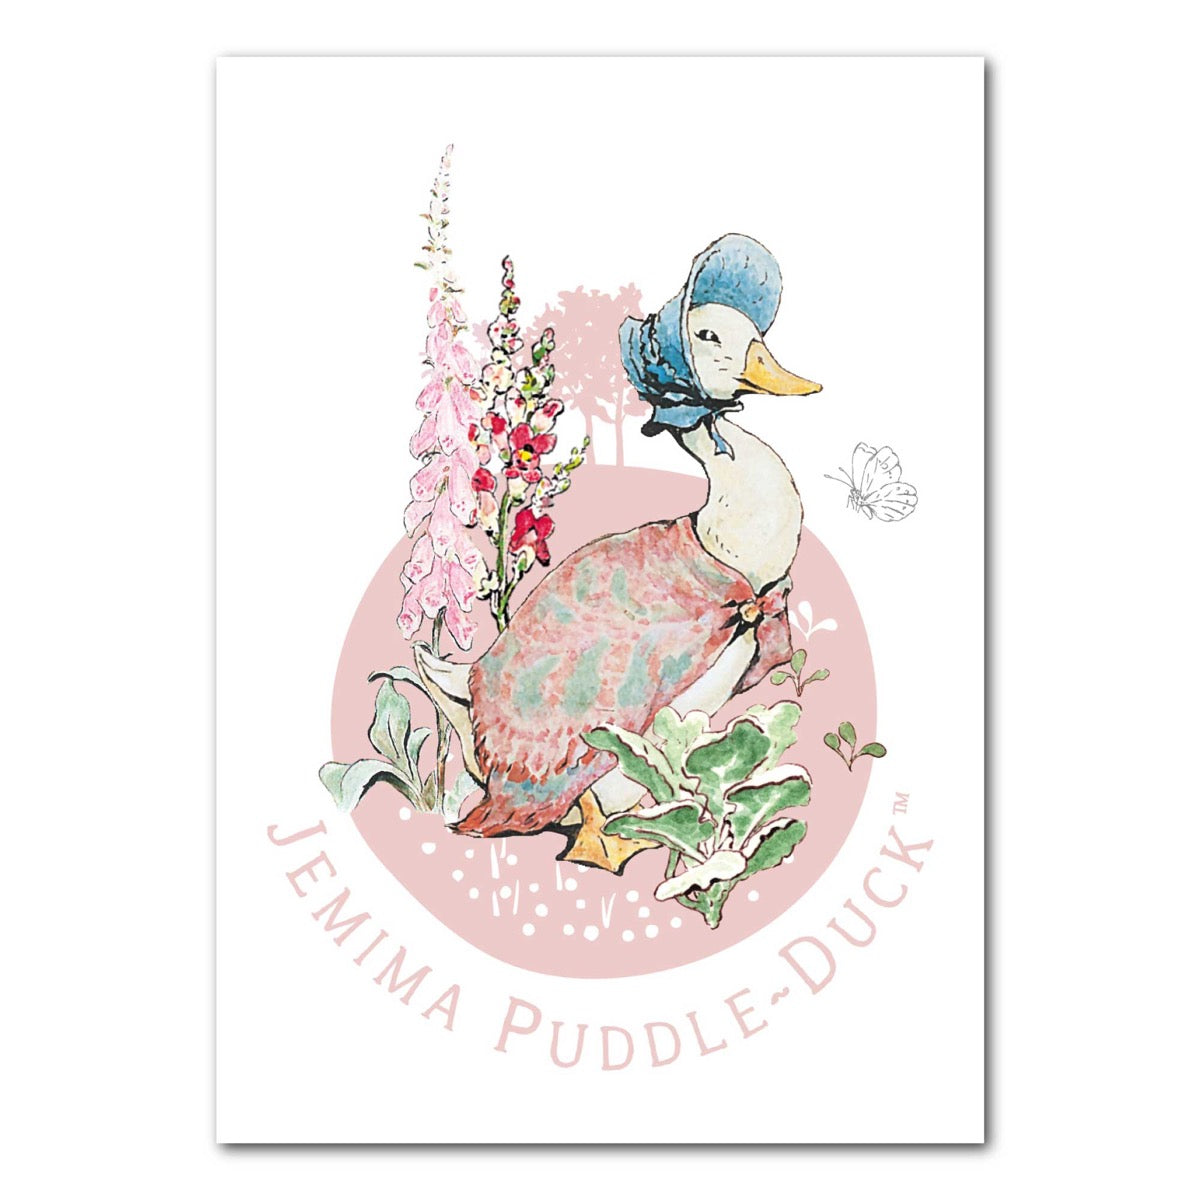 Peter Rabbit Print - Jemima PuddleDuck Garden Circle Print